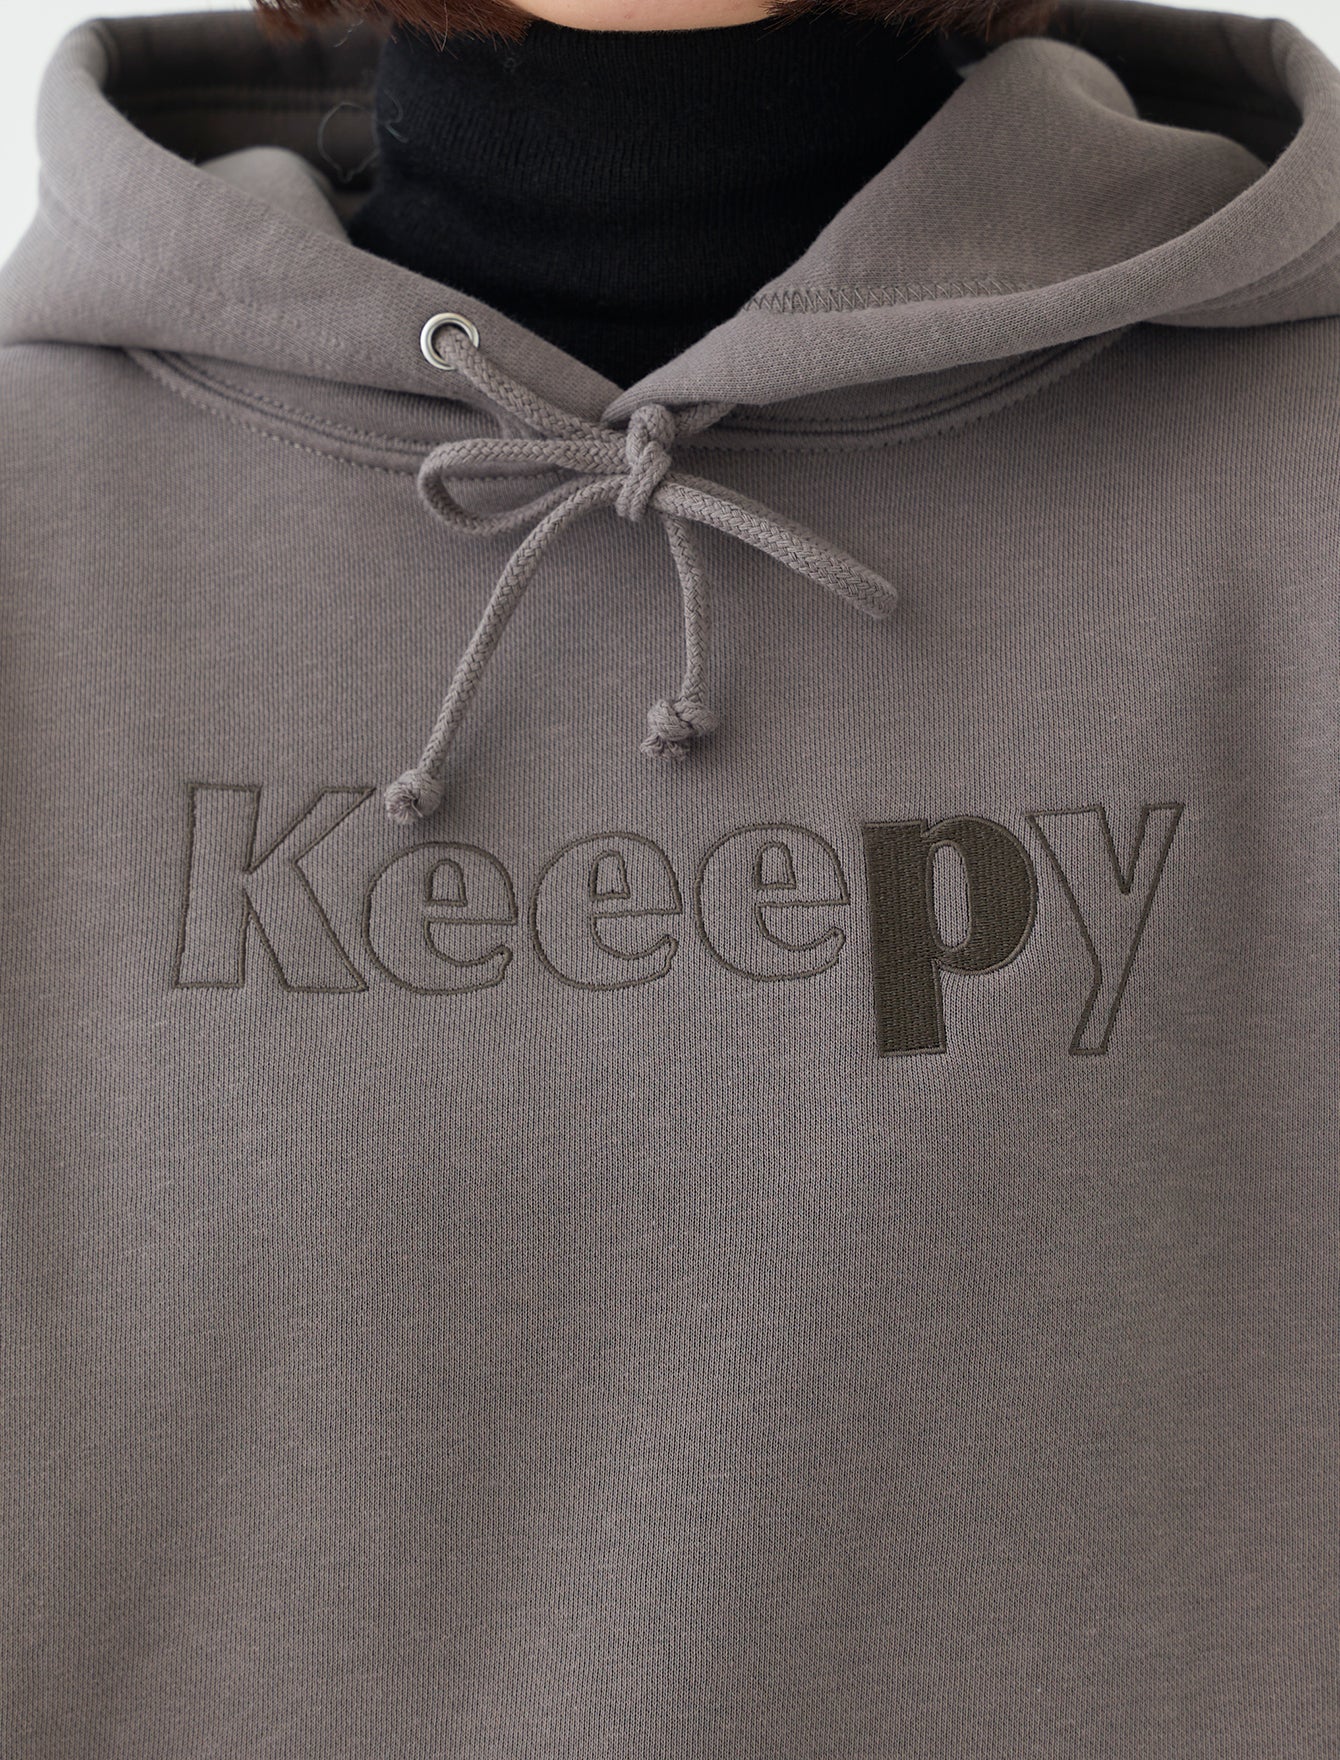 Keeepy sweat hoodie